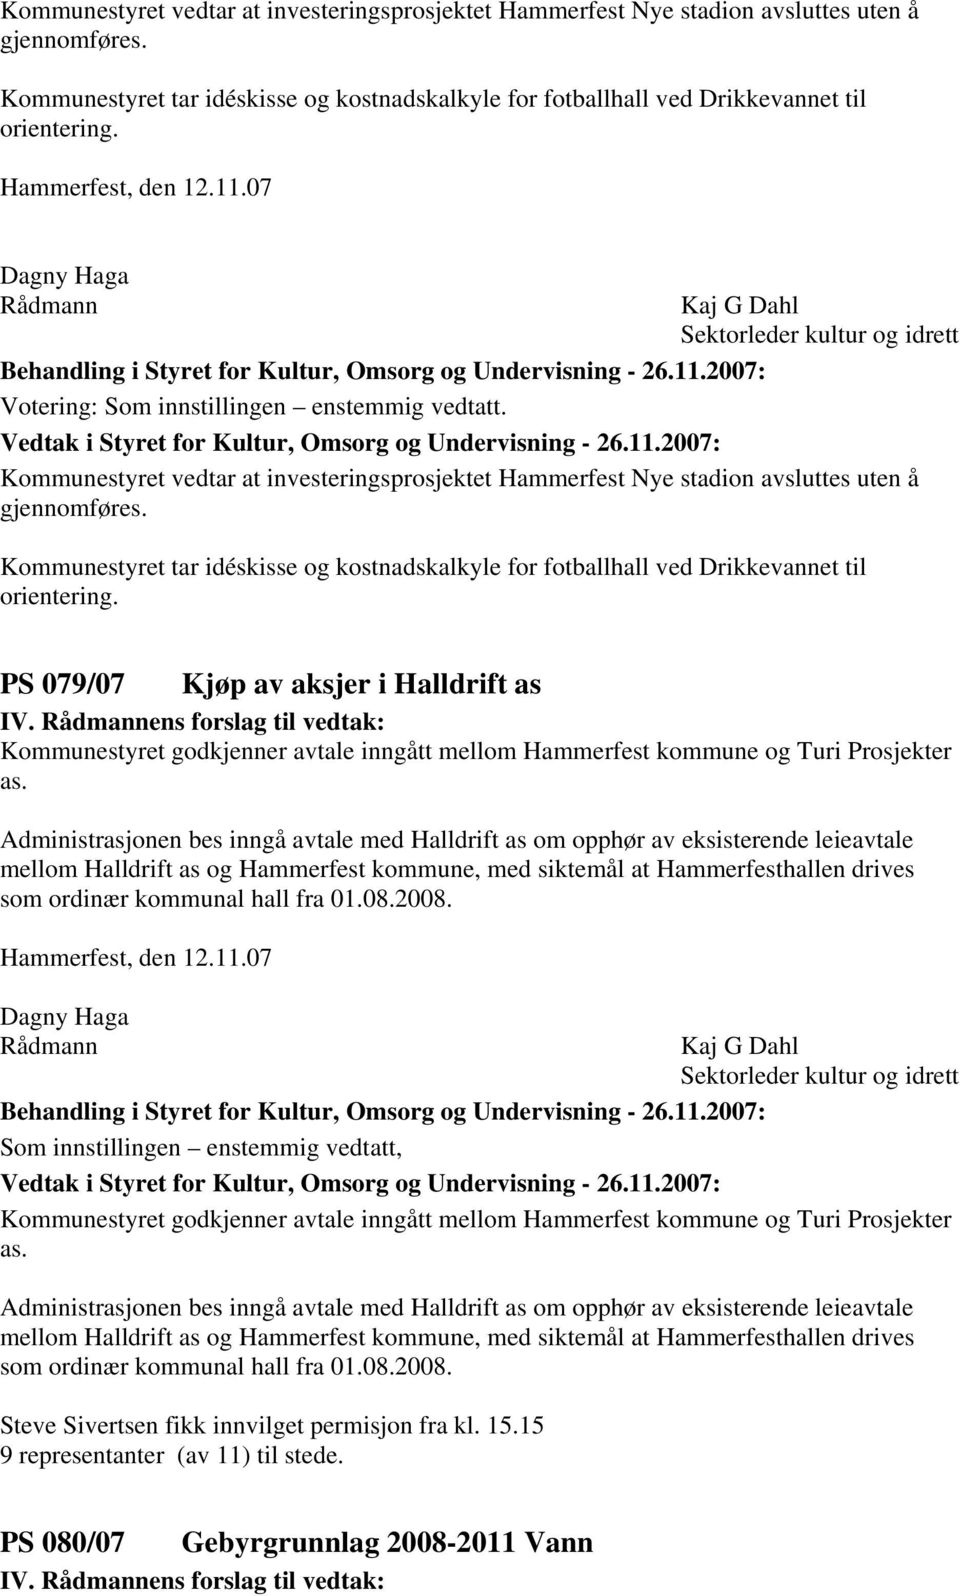 PS 079/07 Kjøp av aksjer i Halldrift as Kommunestyret godkjenner avtale inngått mellom Hammerfest kommune og Turi Prosjekter as.